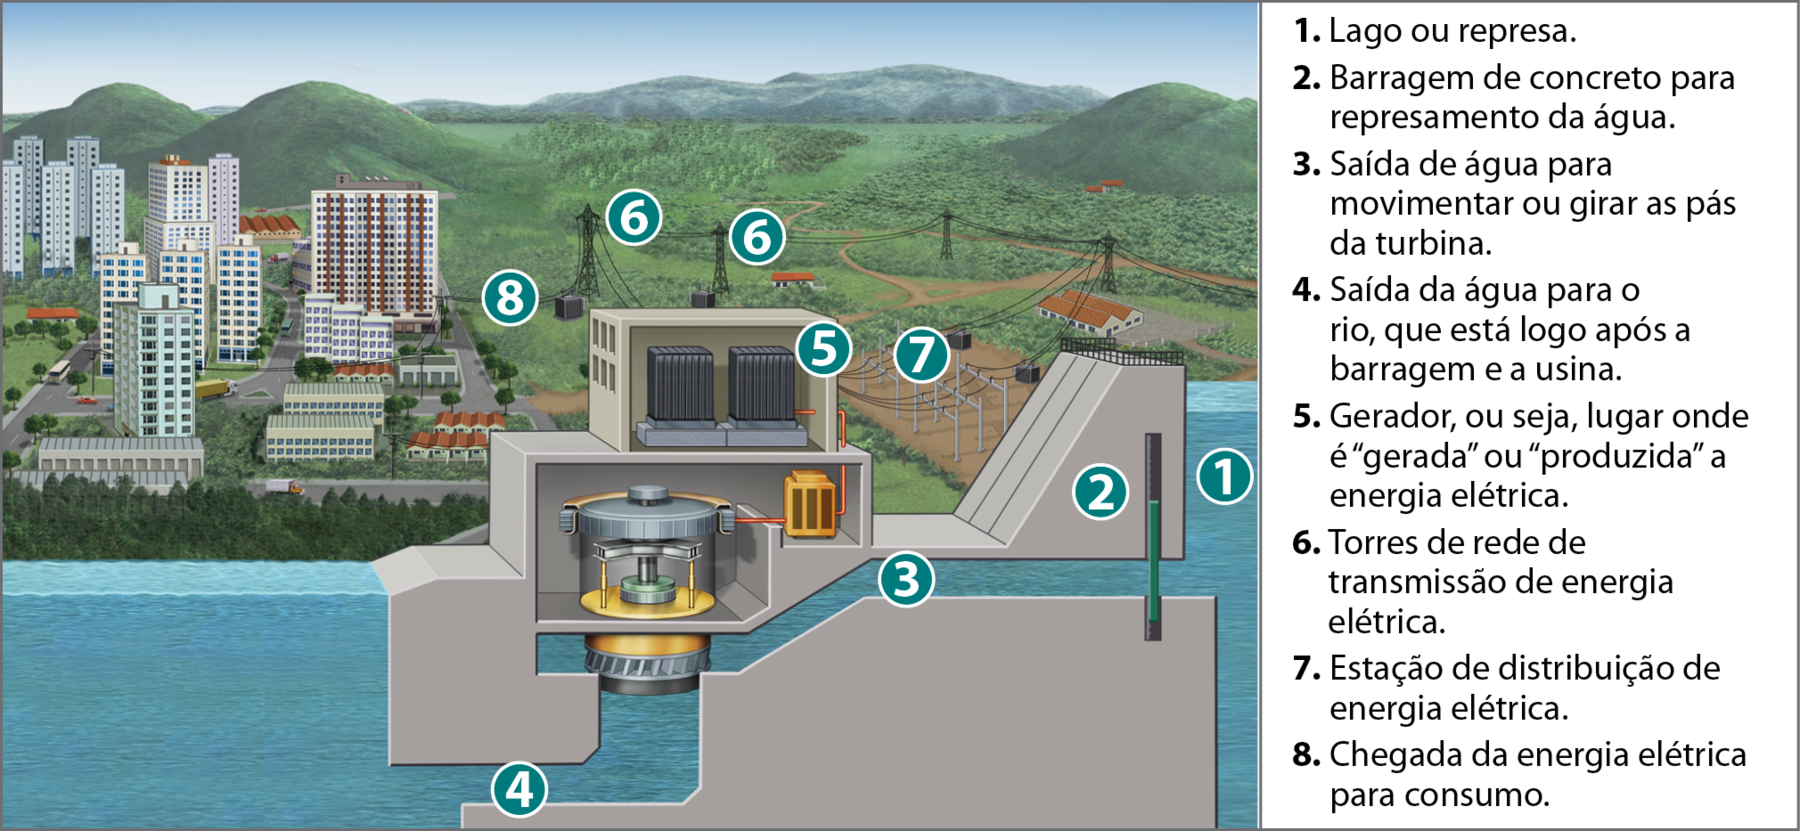 Ilustração. Representação de uma usina hidrelétrica
A imagem mostra uma usina hidrelétrica em primeiro plano e, ao fundo, uma área com vegetação baixa, morros, prédios de tamanhos variados, postes de distribuição de energia elétrica e estradas. A ilustração está numerada em alguns pontos da usina hidrelétrica e, ao lado, há uma legenda indicando o que cada número representa:
1: Lago ou represa. 2: Barragem de concreto para represamento da água do lago. 3: Saída de água para movimentar ou girar as pás da turbina. 4: Saída da água para o rio, que está logo após a barragem e a usina. 5: Gerador, ou seja, lugar onde é “gerada” ou “produzida” a energia elétrica. 6: Torres de rede de transmissão de energia elétrica. 7: Estação de distribuição de energia elétrica. 8: Chegada da energia elétrica para consumo.